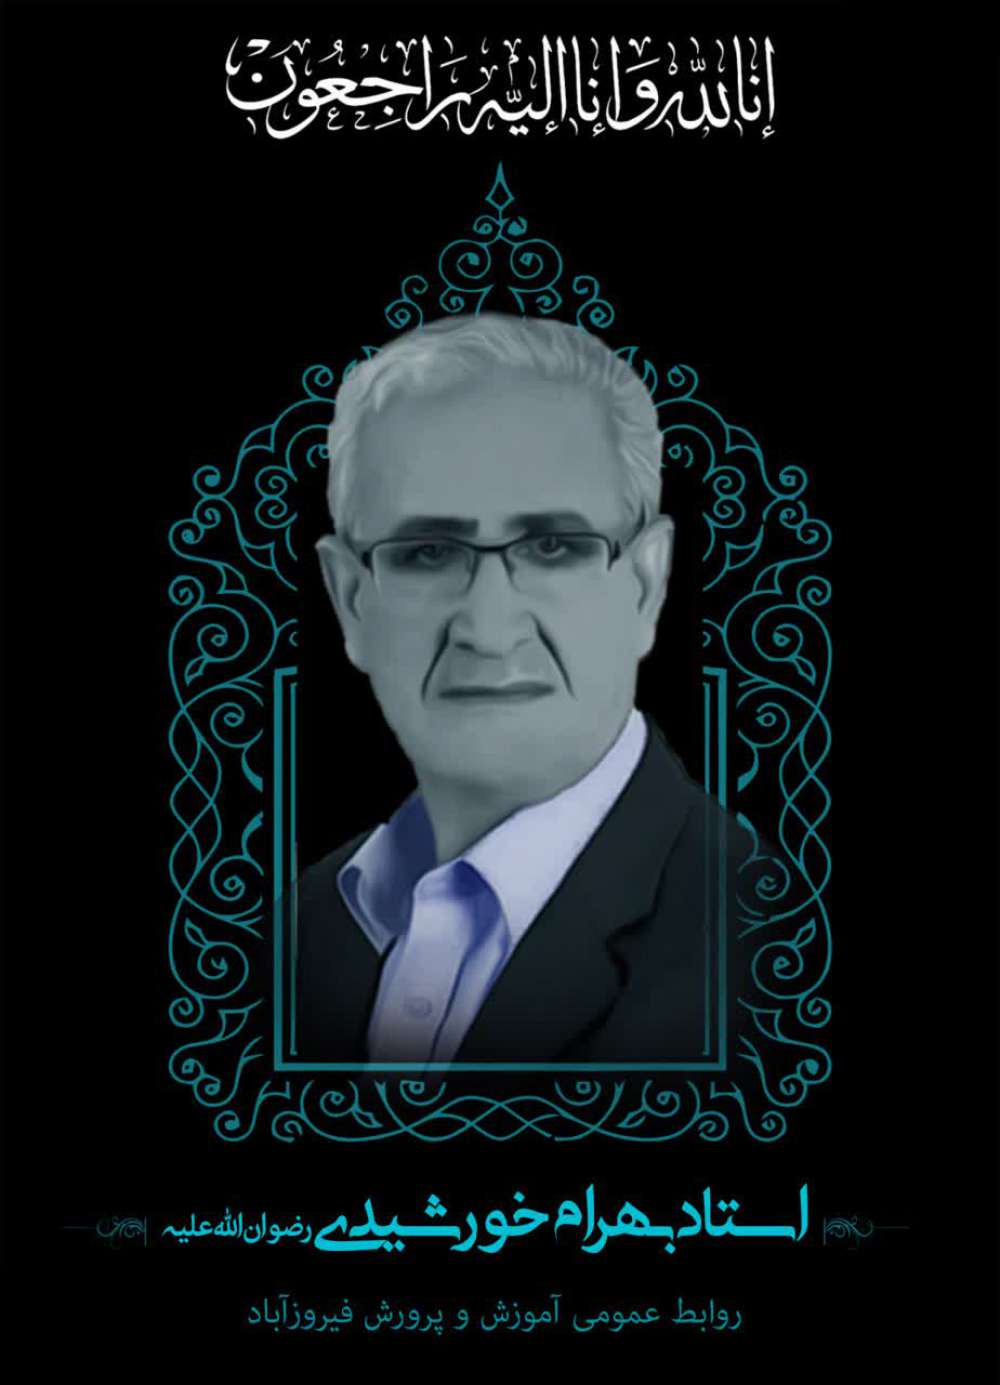 زنده یاد فرهنگی فرهیخته بهرام خورشیدی مال احمدی